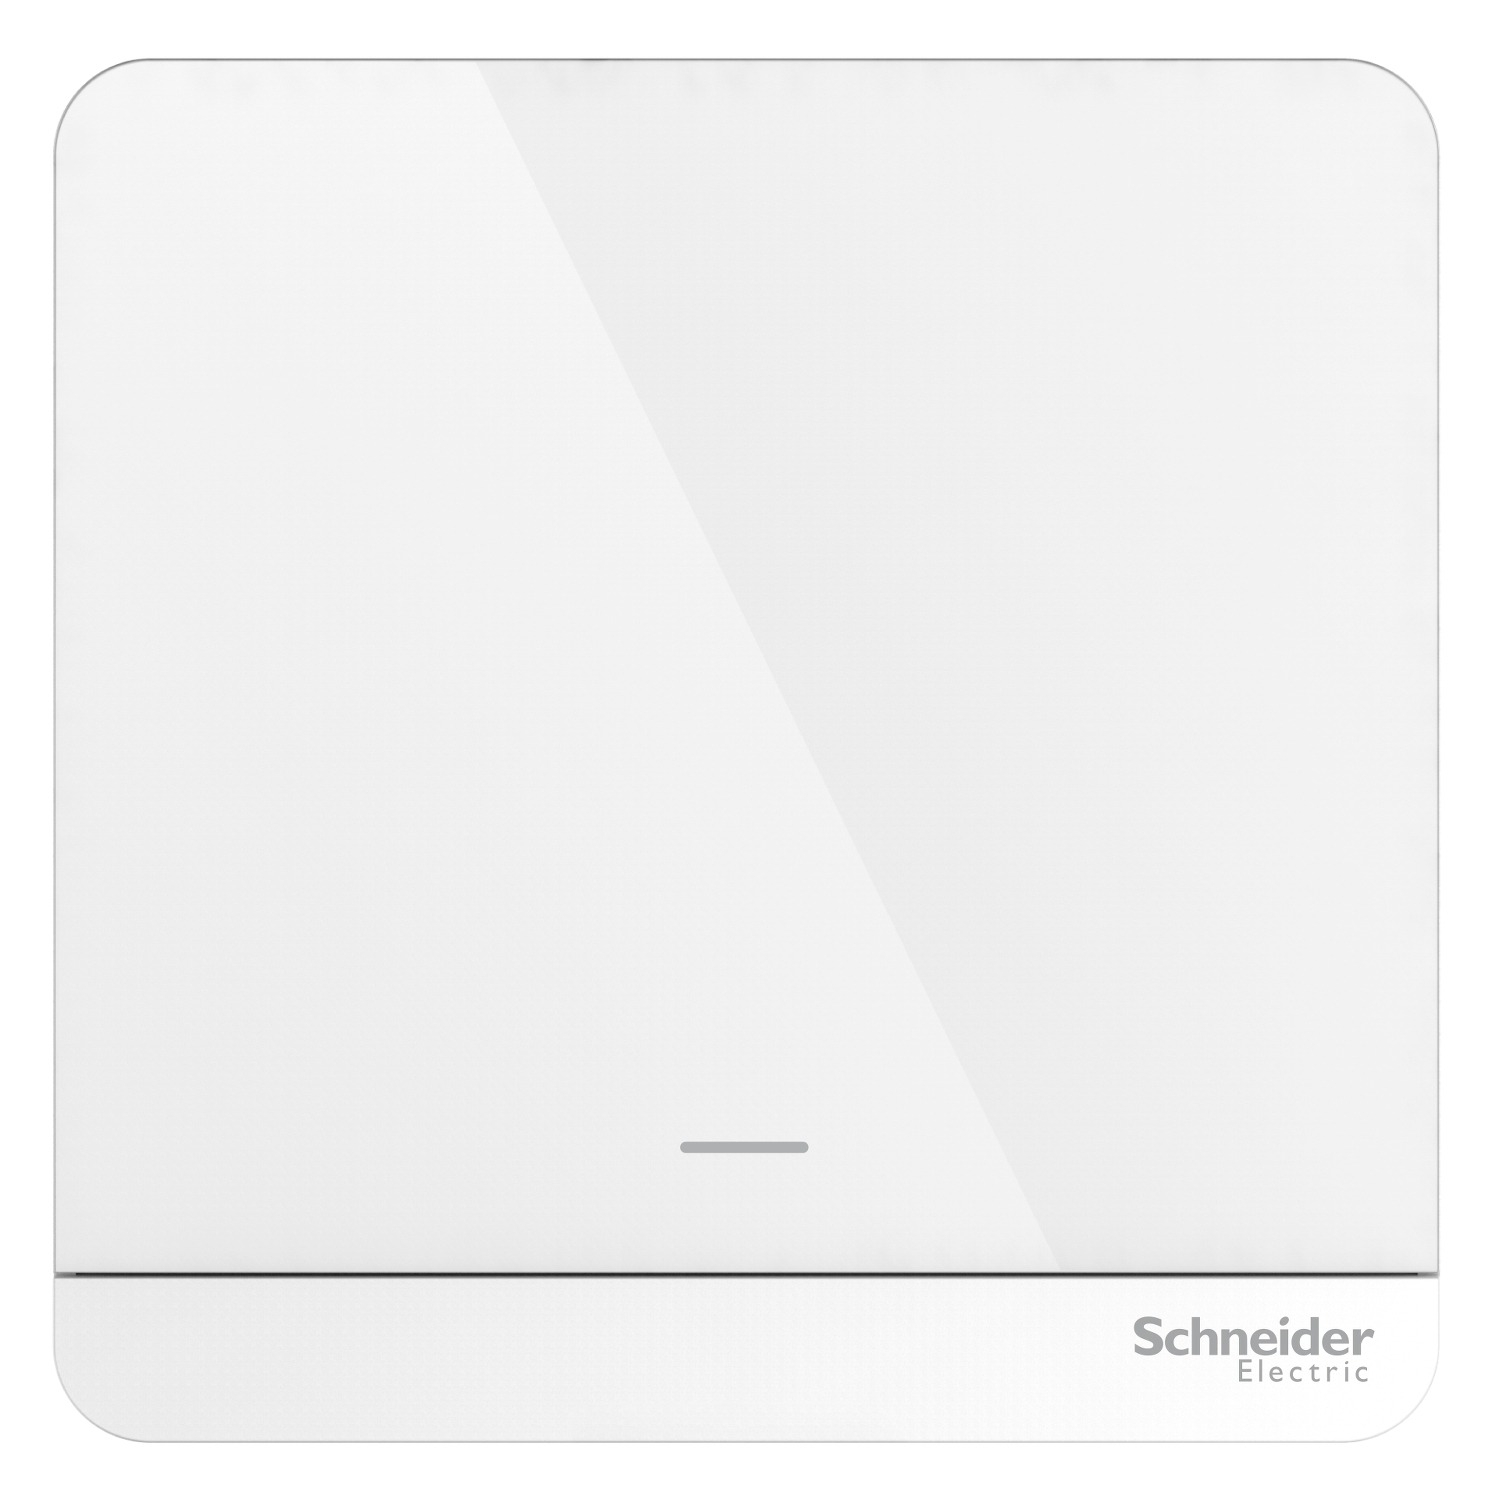 Wiser, AvatarOn, switch, 800 W, White by Schneider Electric